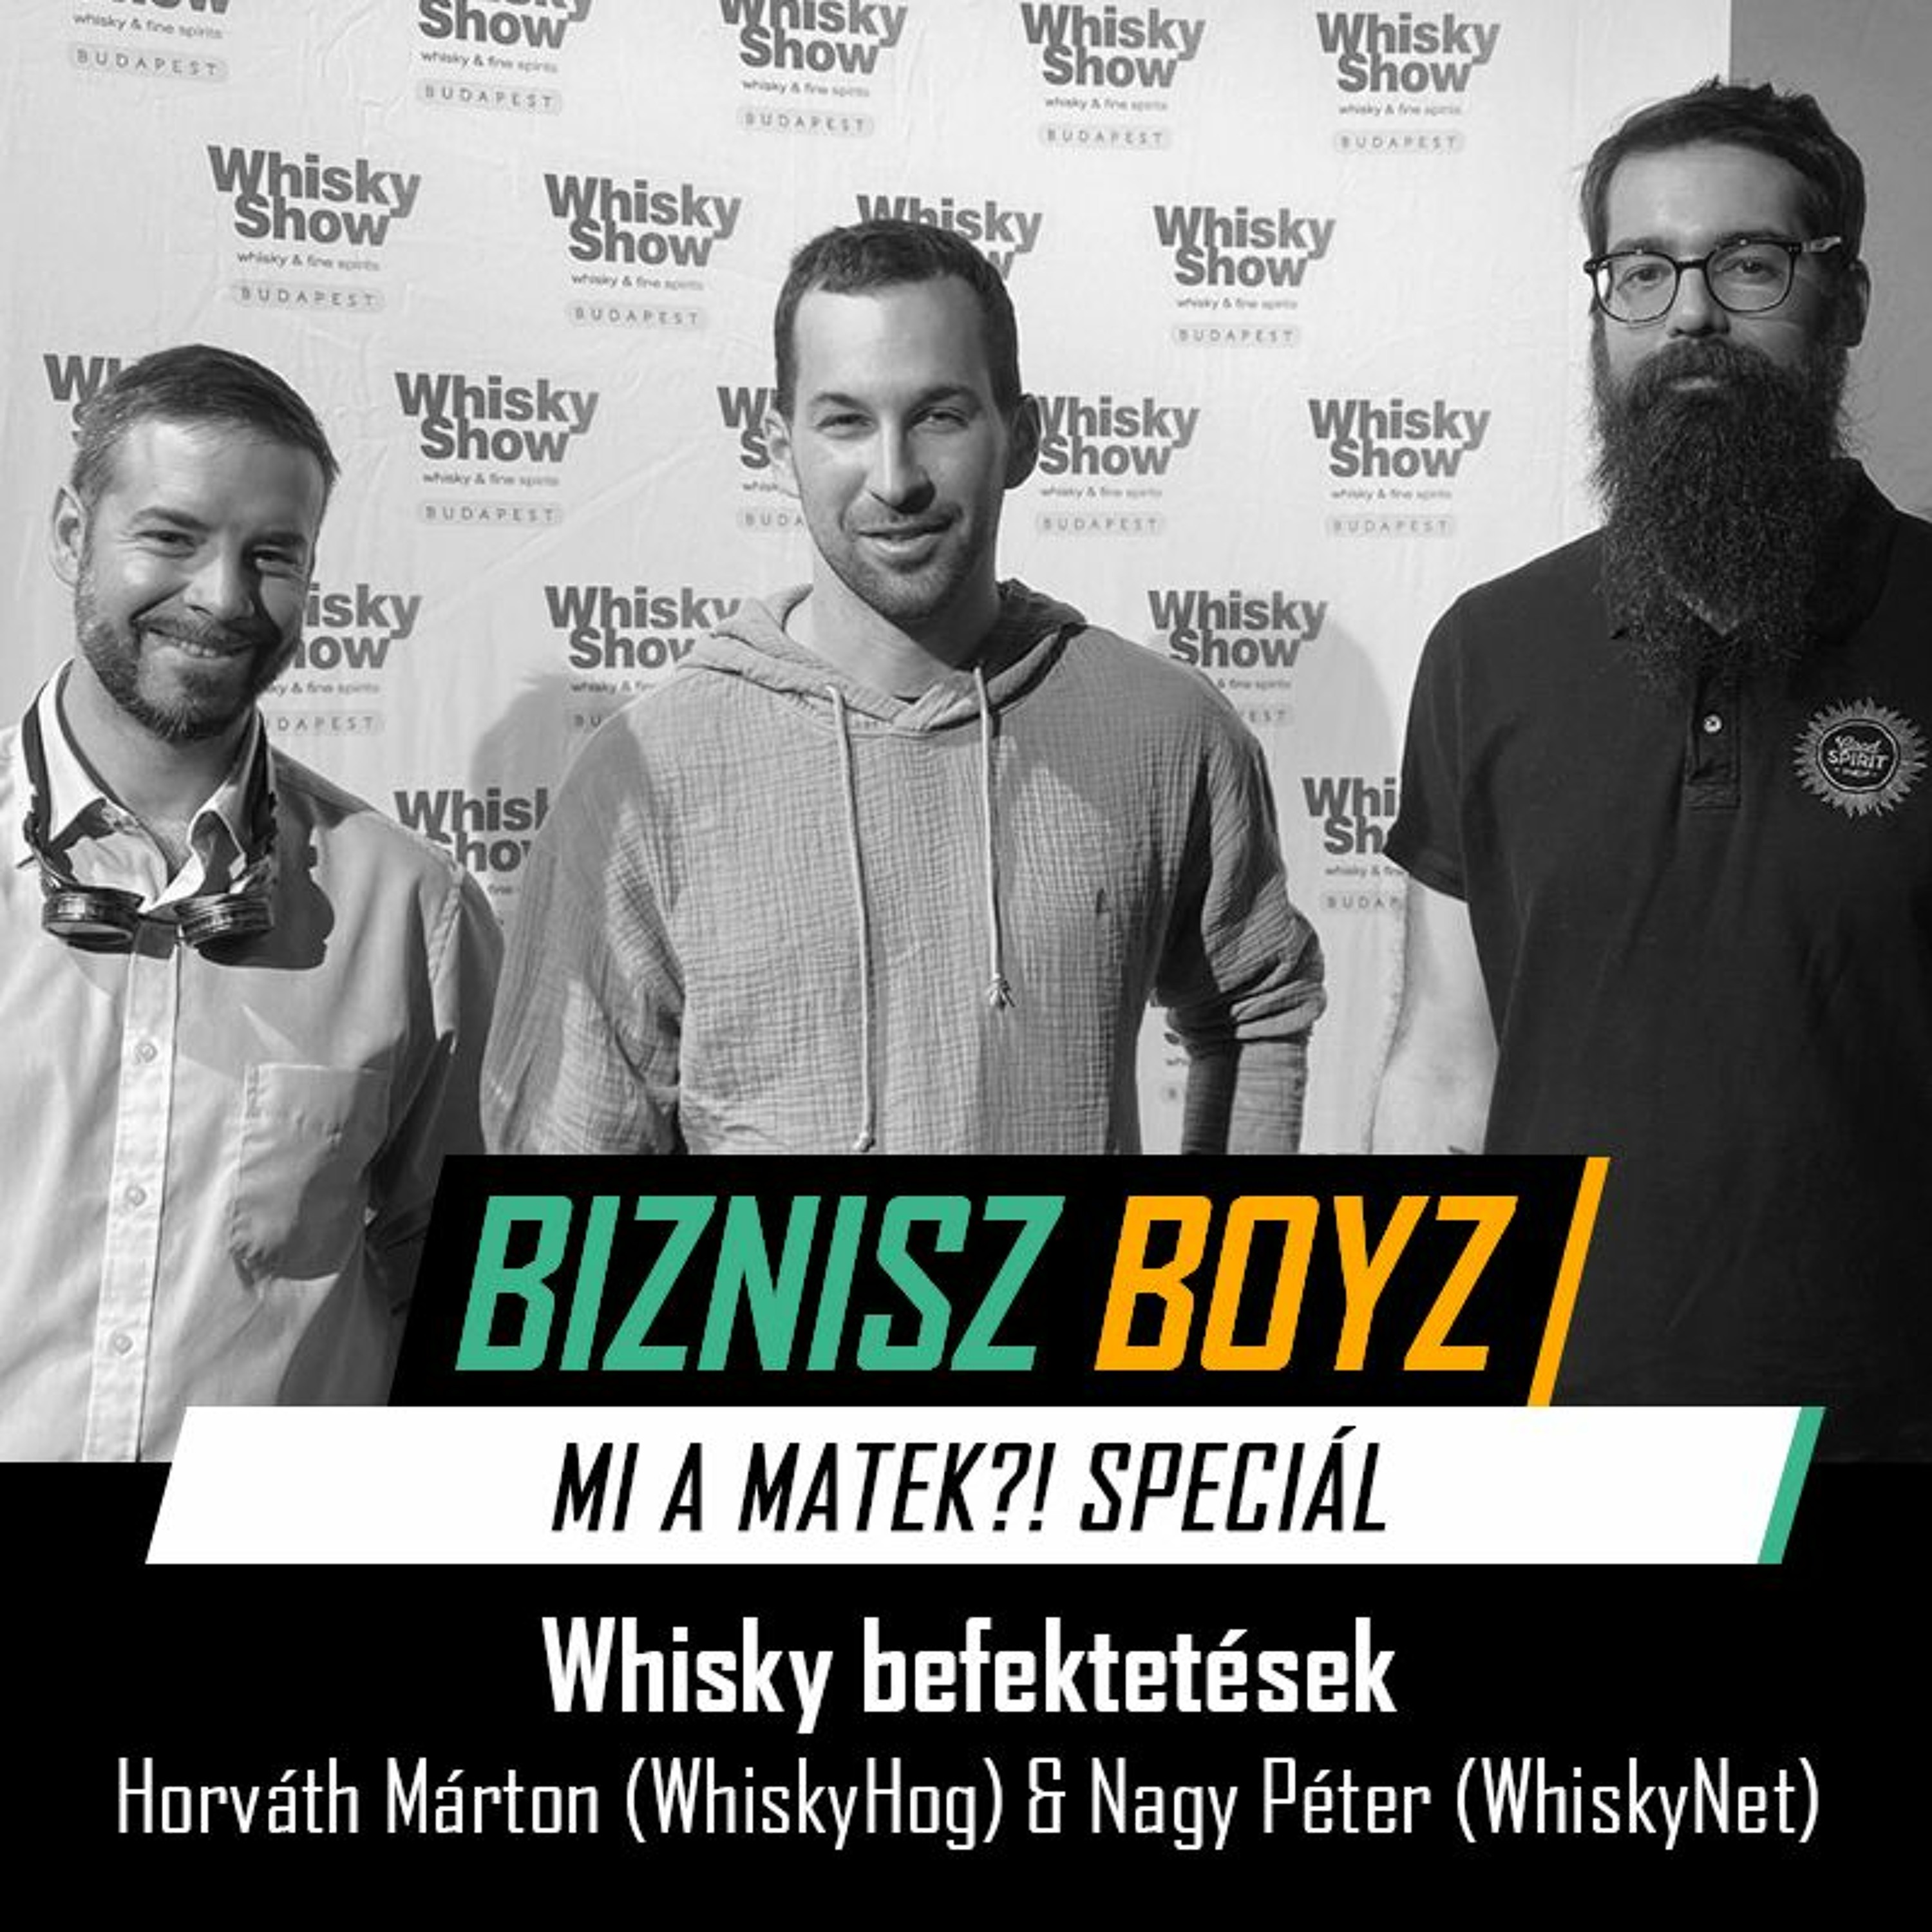 Whisky mint befektetés (Mi a Matek?! Speciál) - Horváth Márton (WhiskyHog) & Nagy Péter (WhiskyNet)